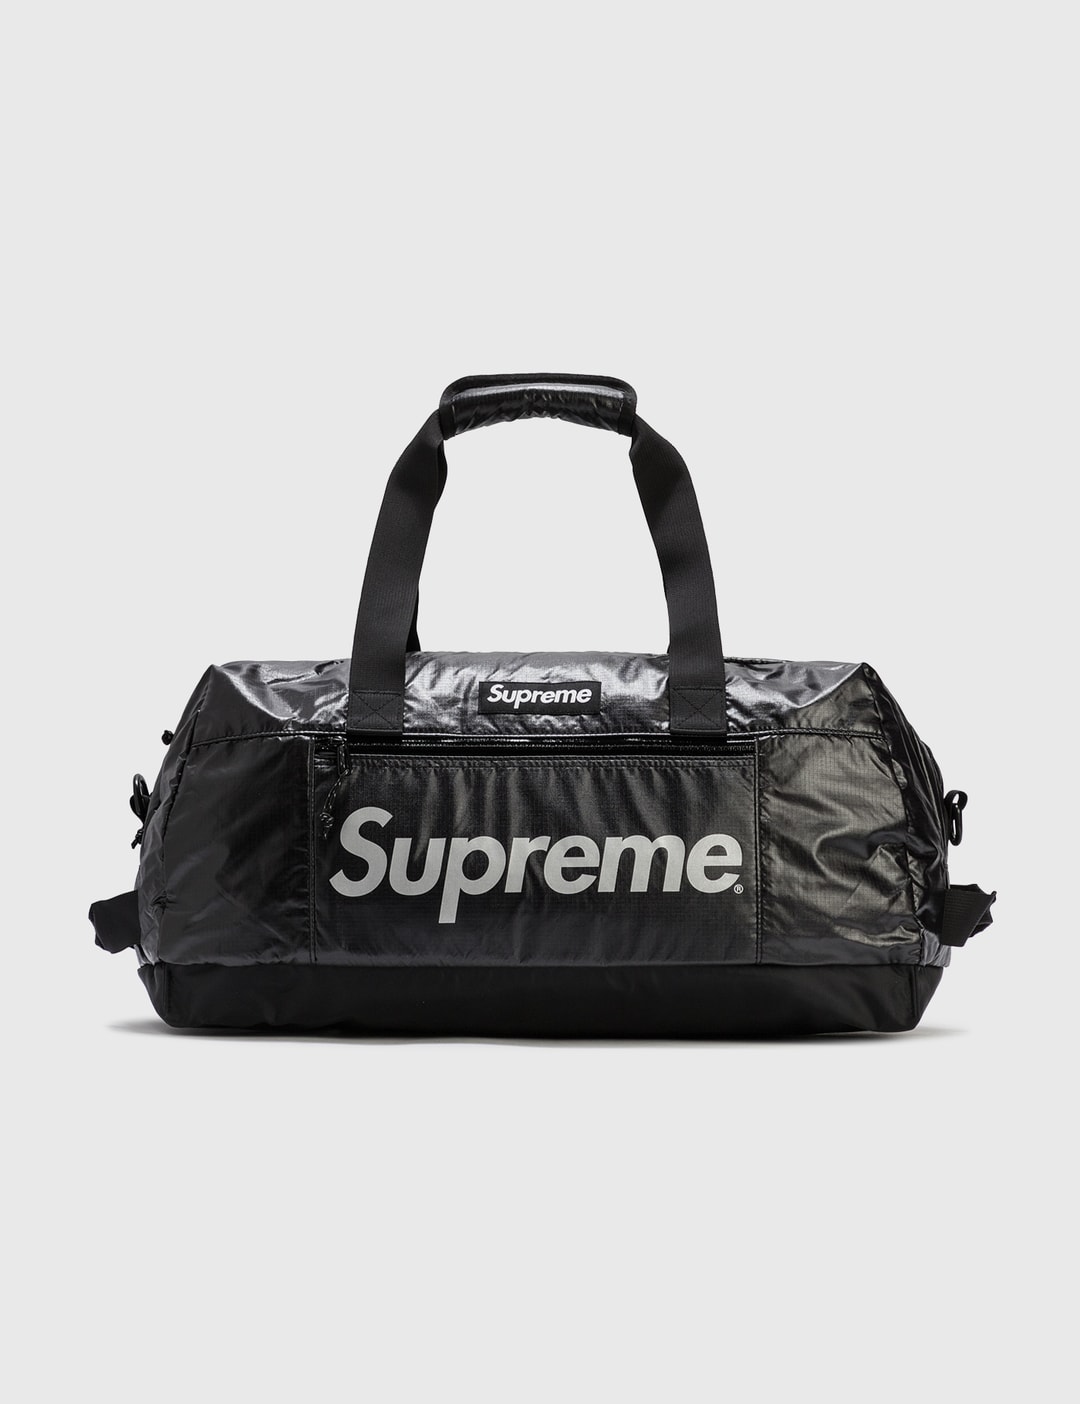 Supreme Duffle Bags for Men